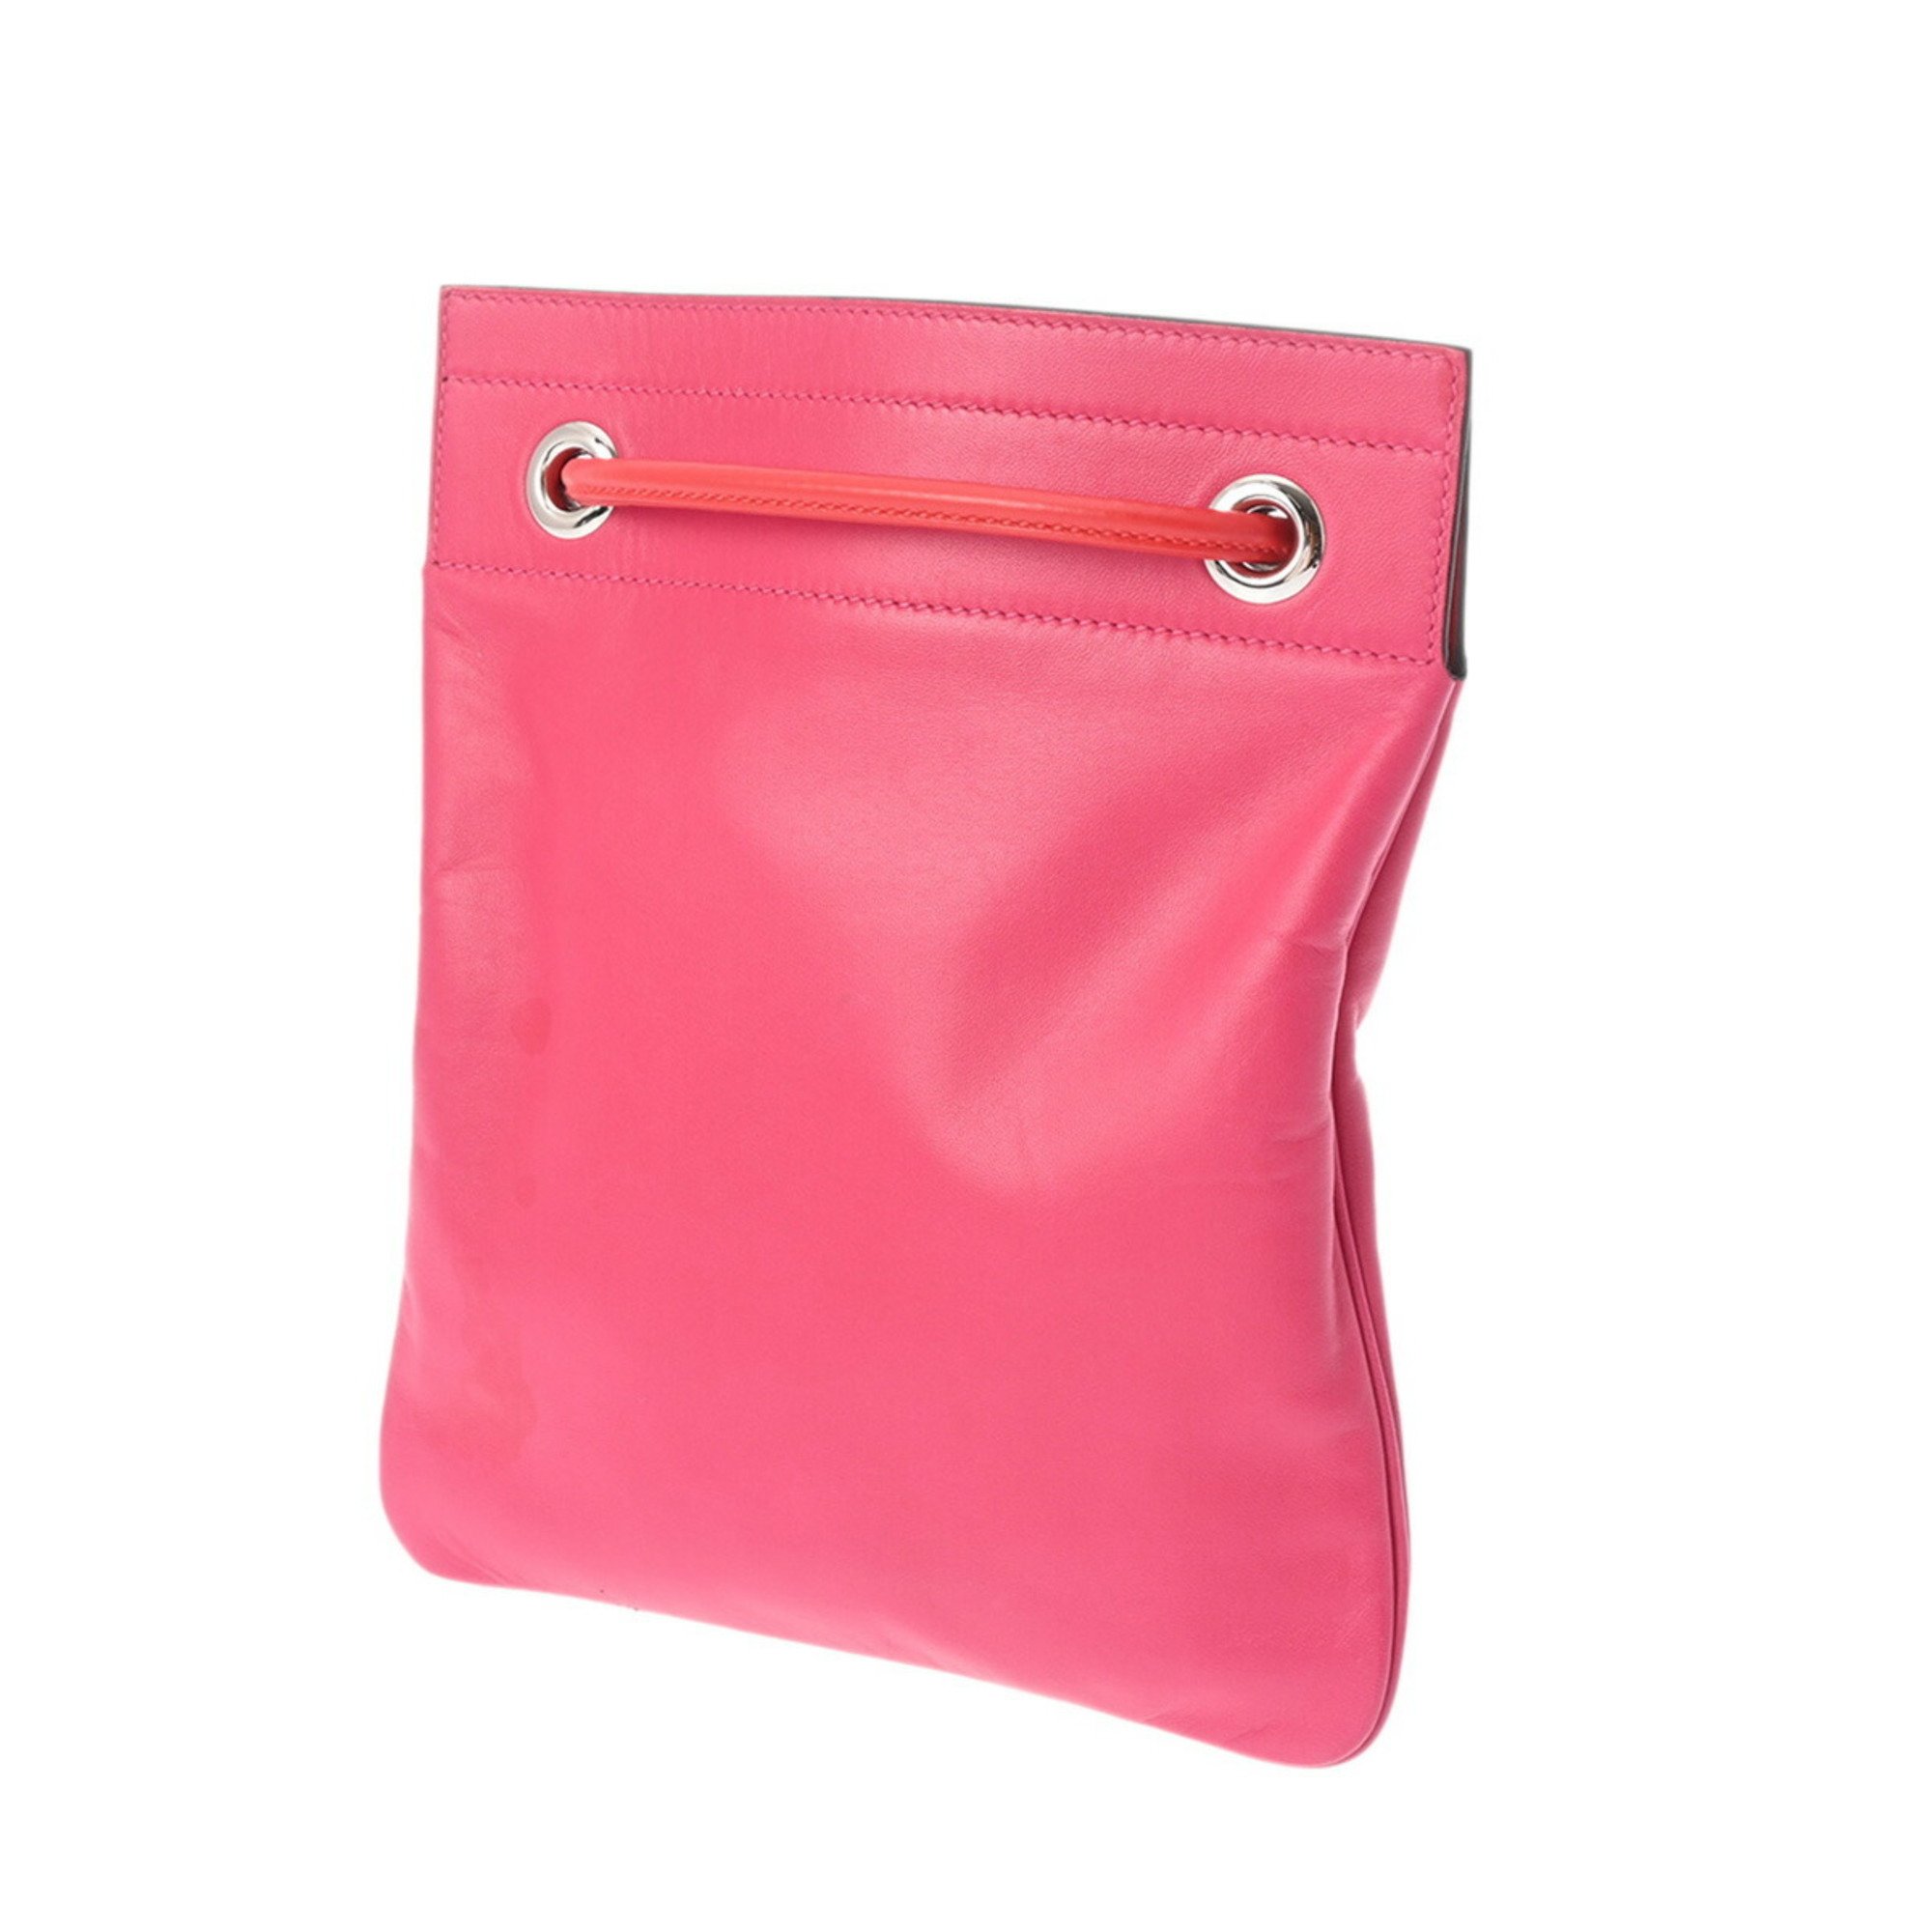 HERMES Sac Aline Palladium Hardware - Y Series (around 2020) Women's Swift Leather Shoulder Bag